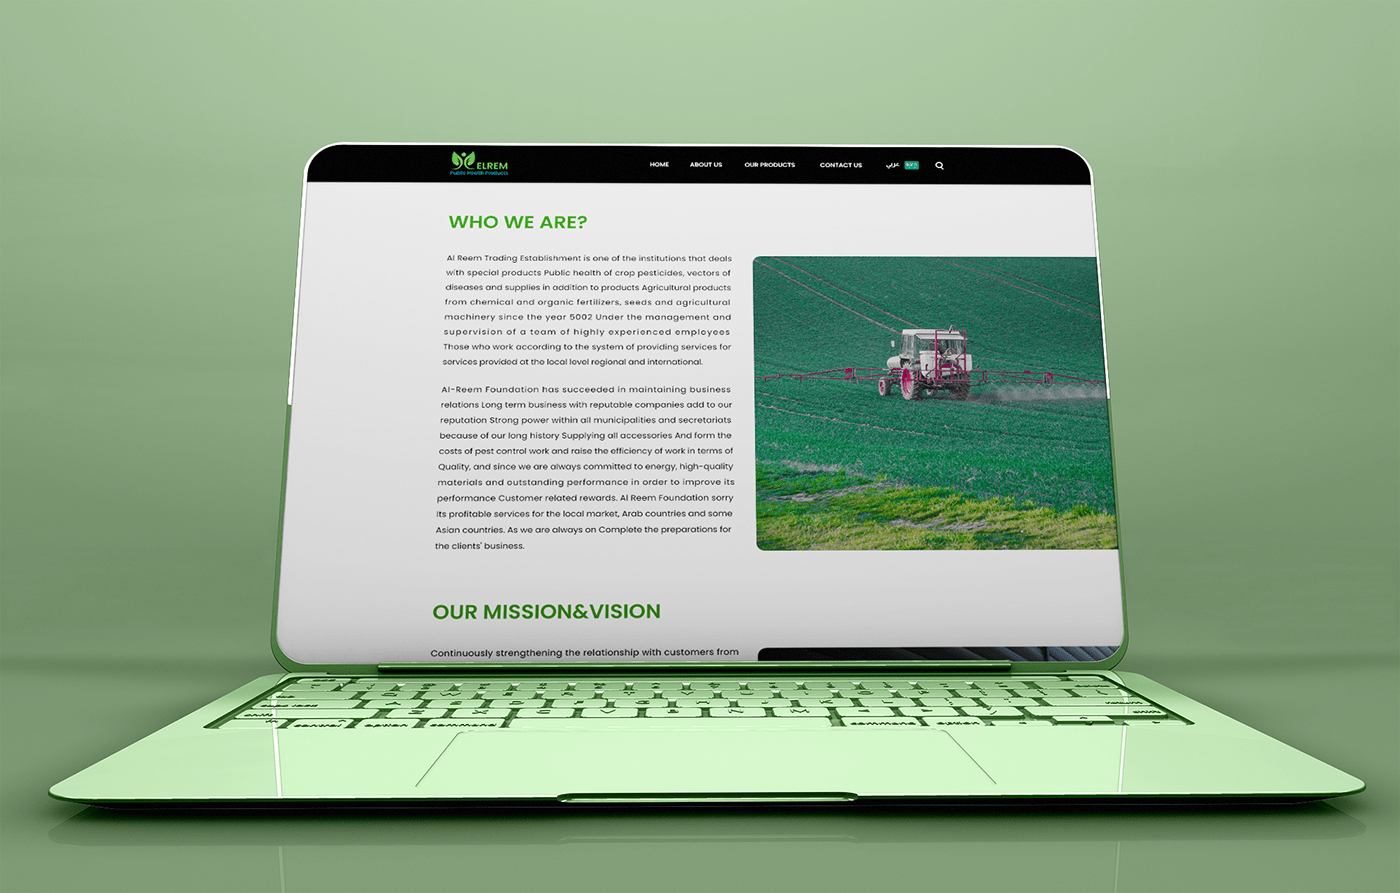 fertilizers landing page pesticides Public Health single page website UI UX design ui ux website user interface Website Website Design